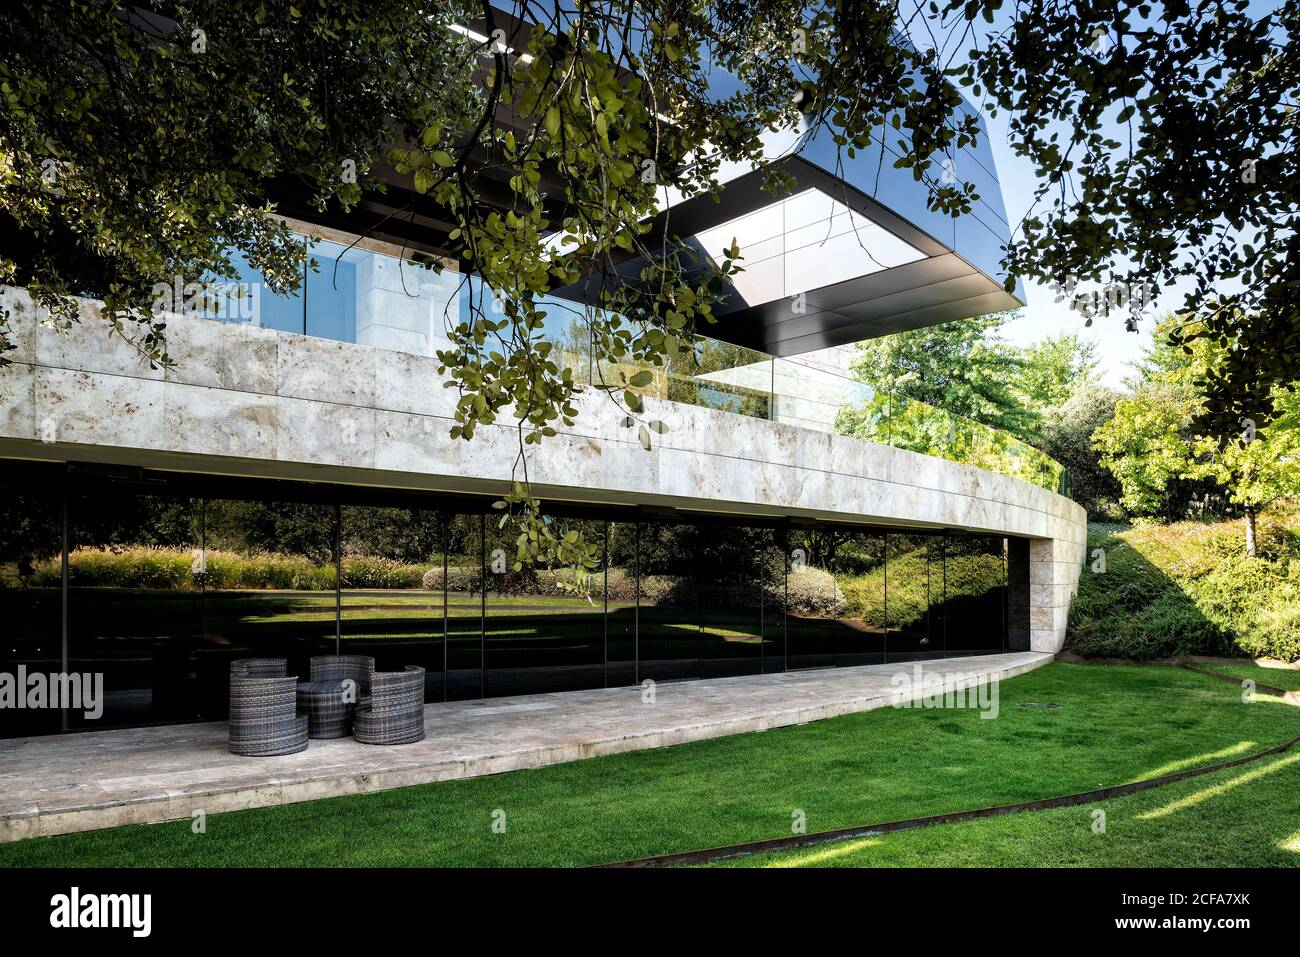 Façade d'un immense bâtiment contemporain de style futuriste avec une végétation luxuriante pelouse dans l'arrière-cour Banque D'Images